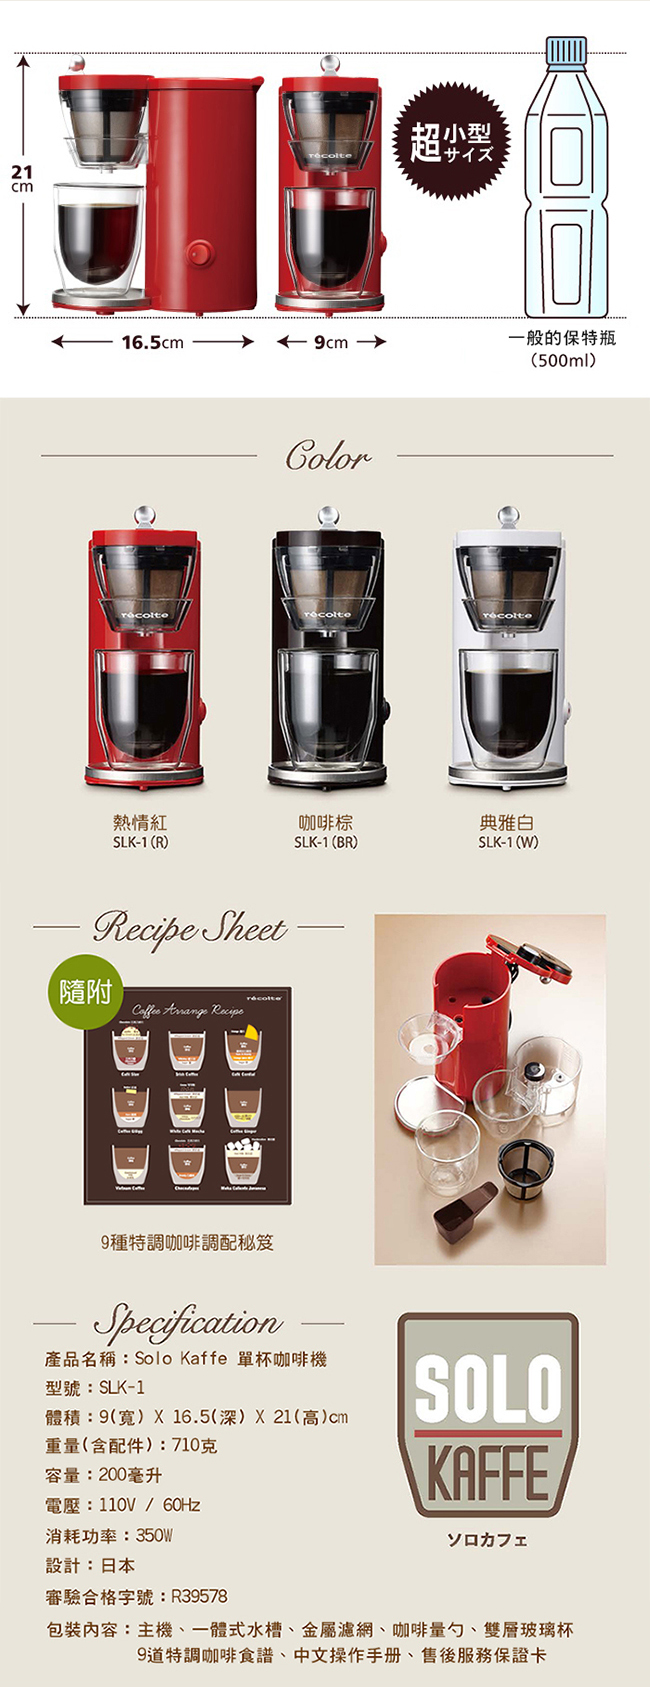 日本 recolte Solo Kaffe 單杯咖啡機 咖啡棕